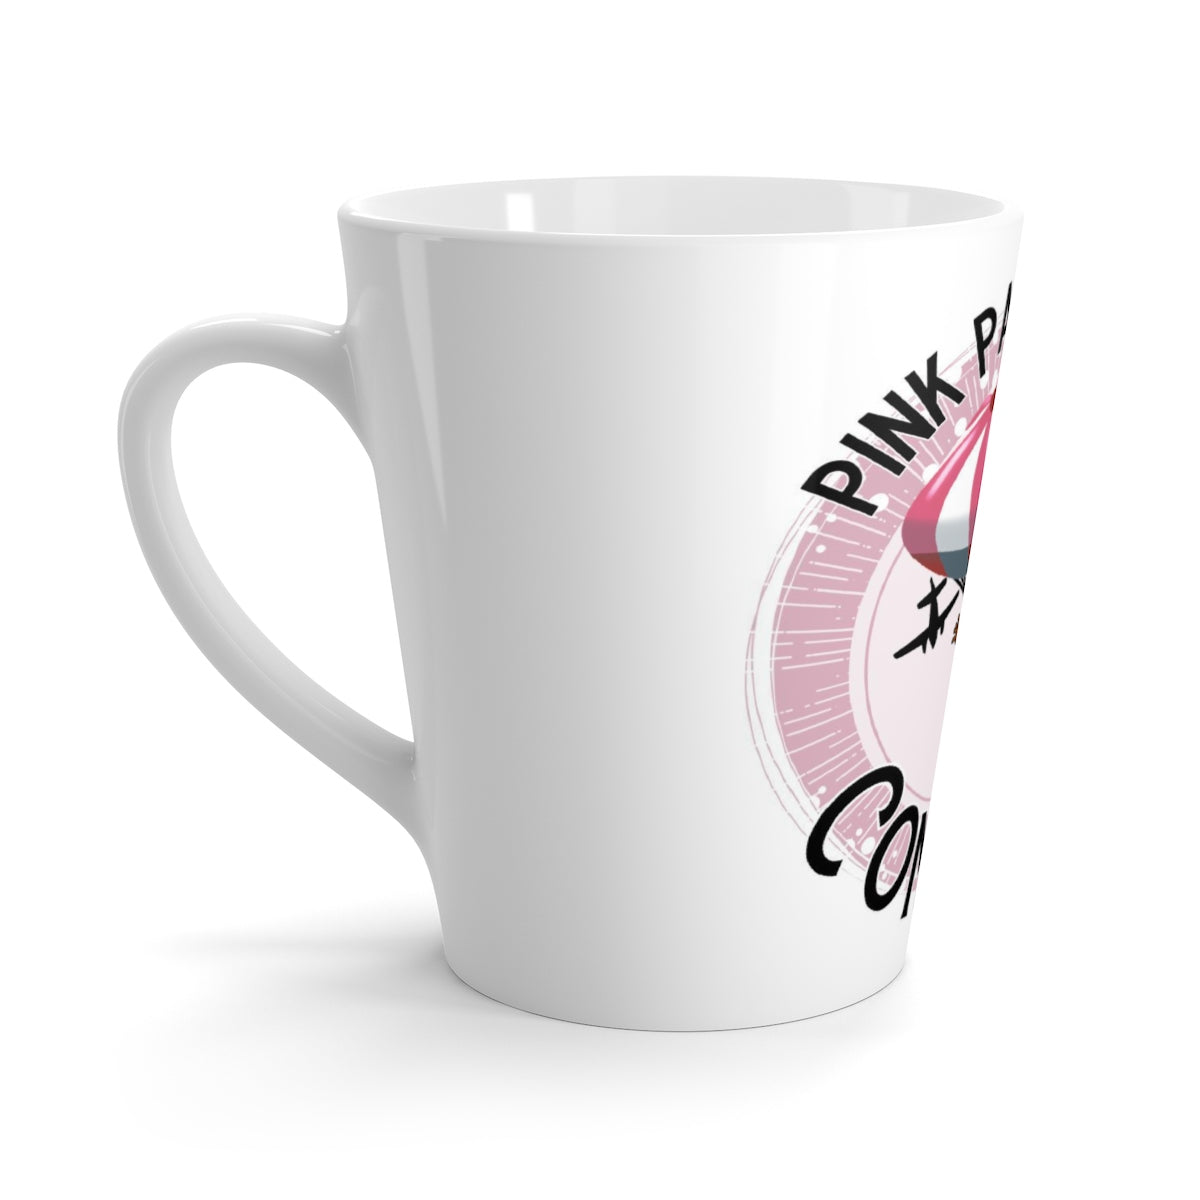 Pink Parachute Company Freestyle - Latte mug